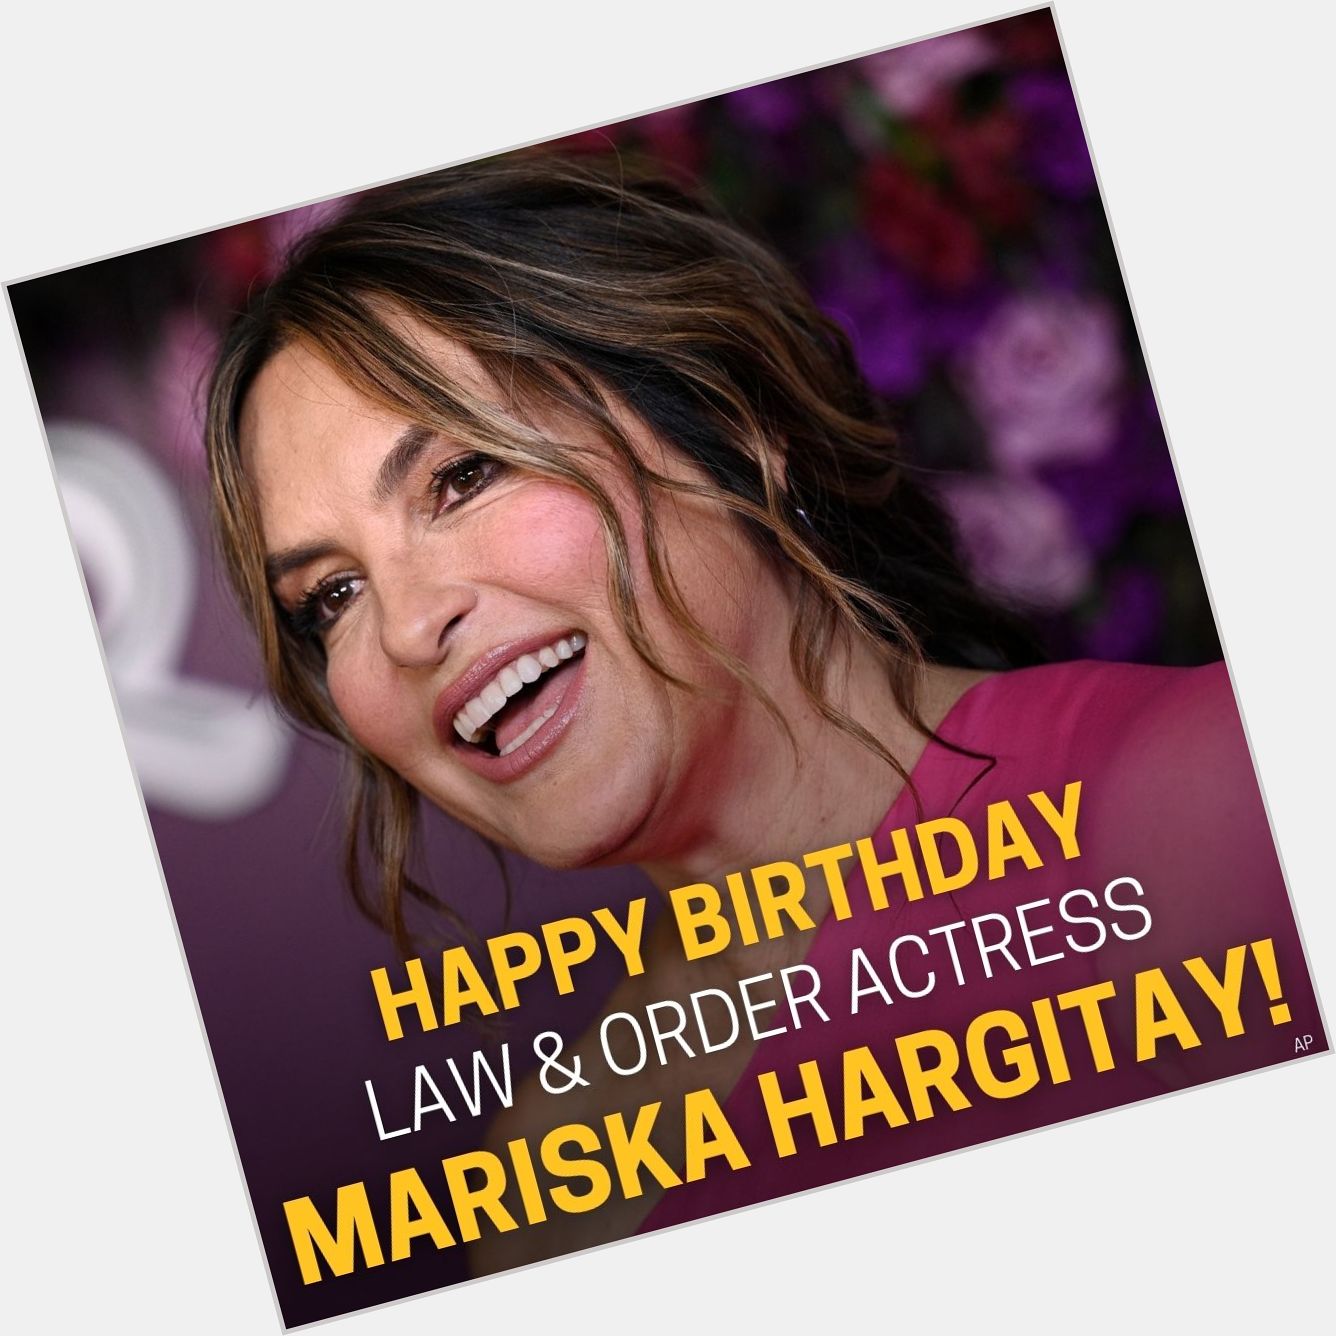 Are you a Law & Order SVU fan? Happy 58th Birthday Mariska Hargitay! 